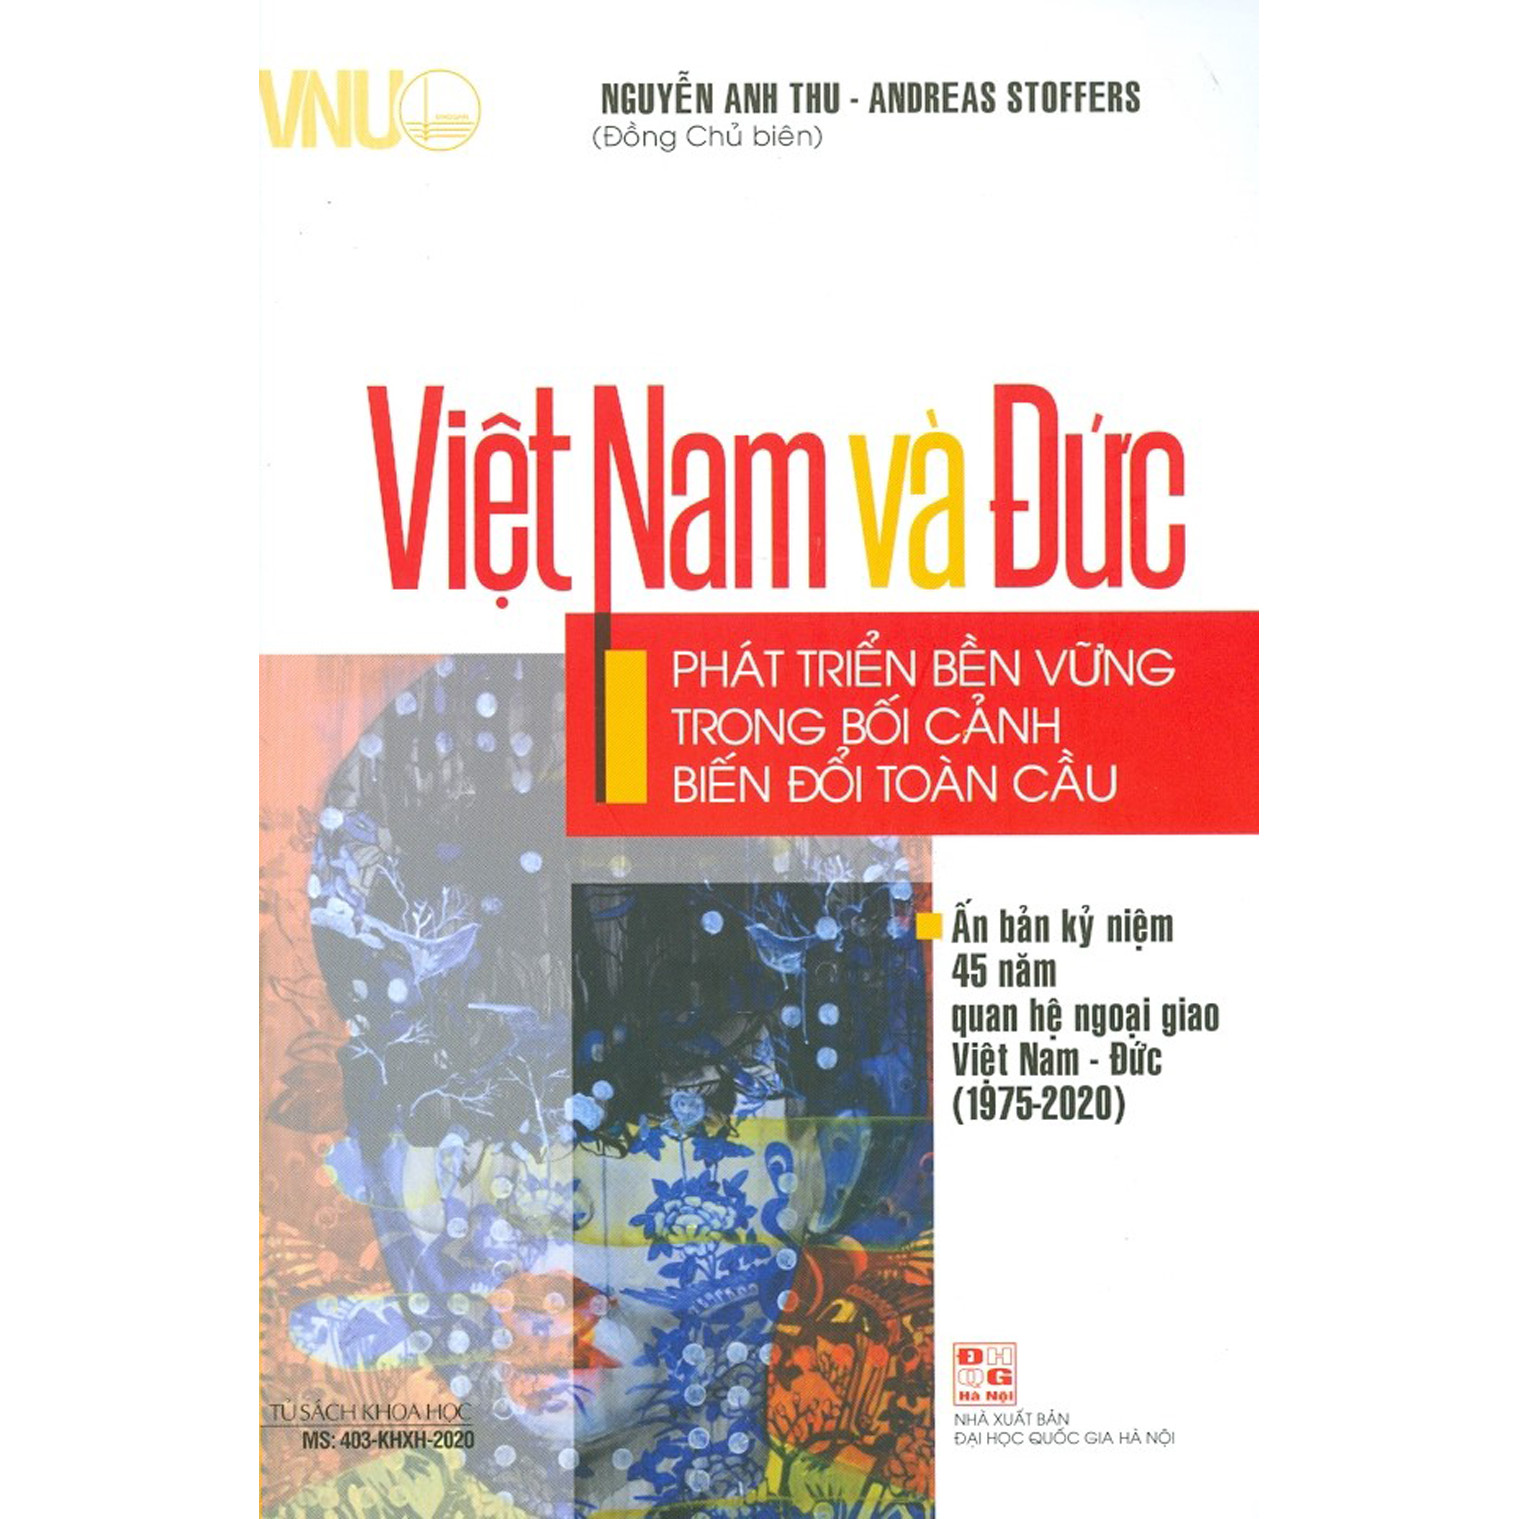 Việt Nam Và Đức - Phát Triển Bền Vững Trong Bối Cảnh Biến Đổi Toàn Cầu - Ấn Bản Kỷ Niệm 45 Năm Quan Hệ Ngoại Giao Việt Nam - Đức (1975-2020)